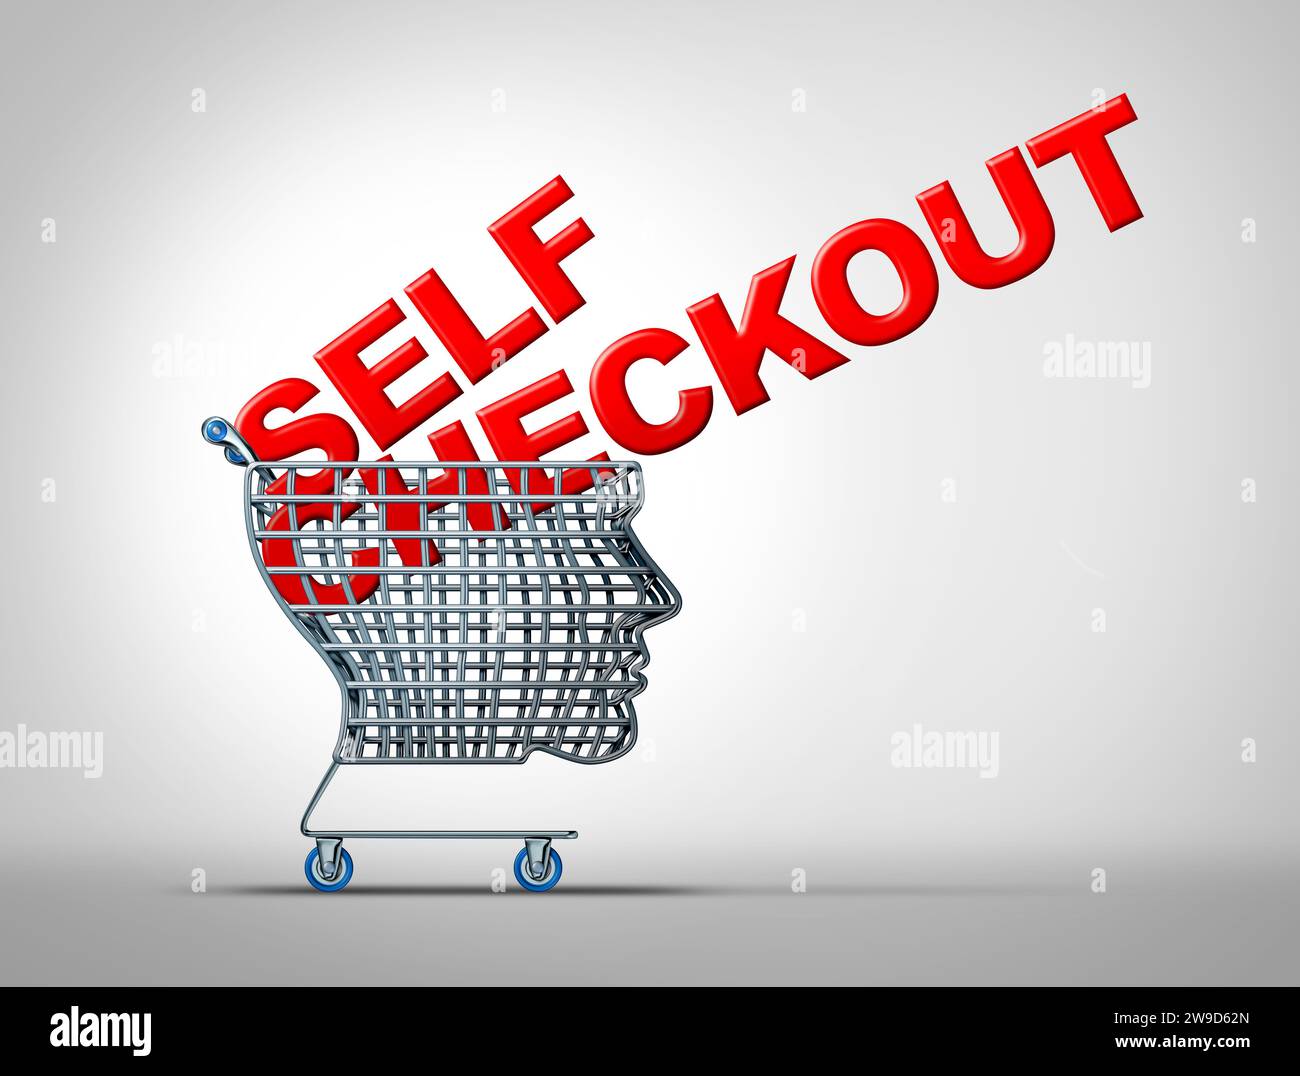 Self Checkout als Einzelhandelskonzept und autonomes Kassierertechnologiesymbol als Einkaufswagen, der den Konsum und den modernen Trubel repräsentiert Stockfoto